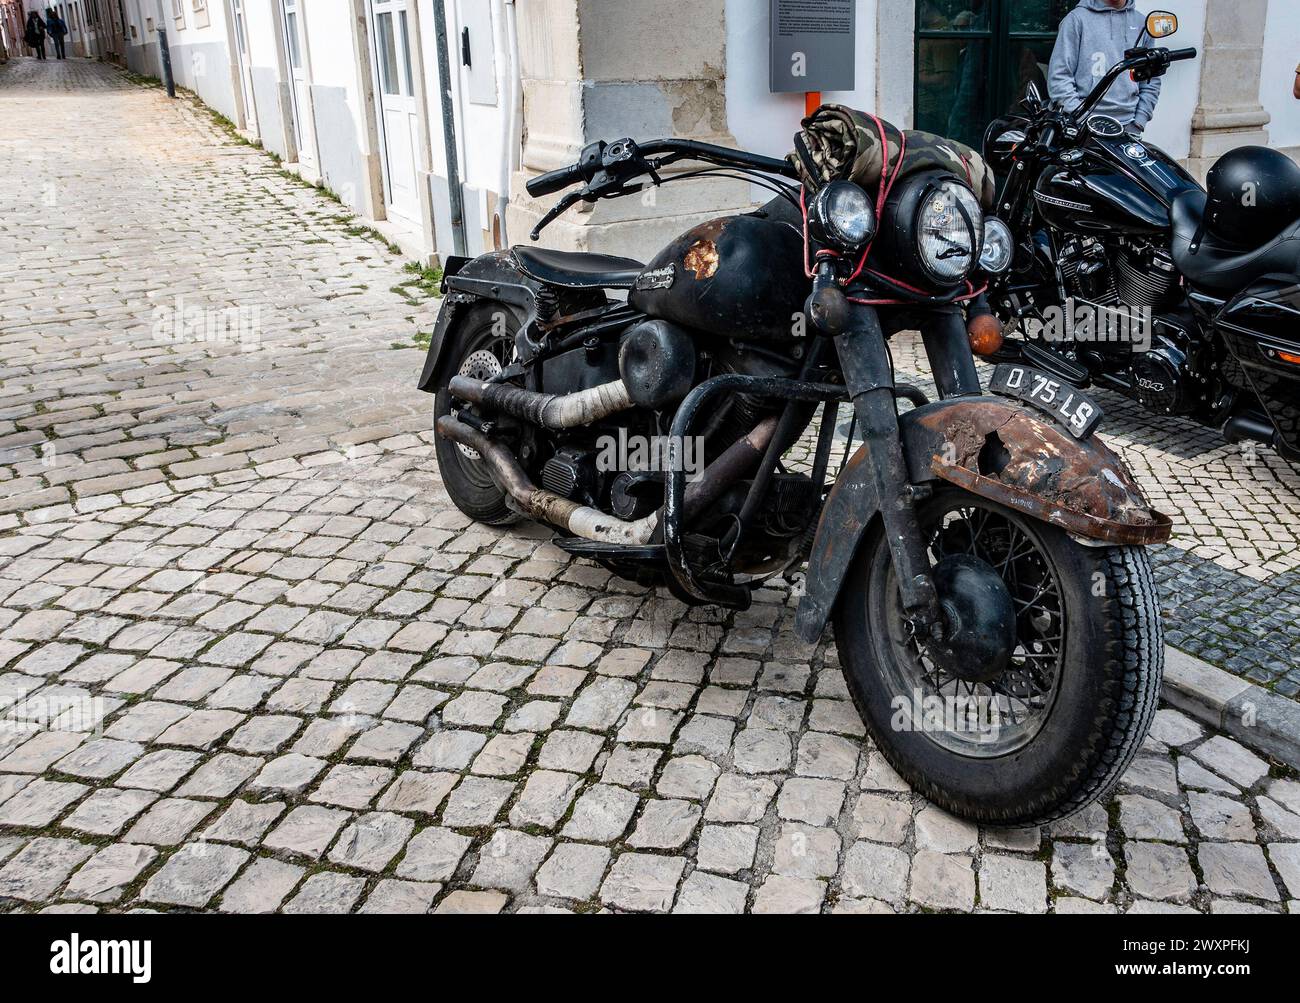 Una motocicletta arrugginita d'epoca con una patina distinta si trova parcheggiata su una vecchia strada acciottolata, a Loule, Portogallo. Foto Stock